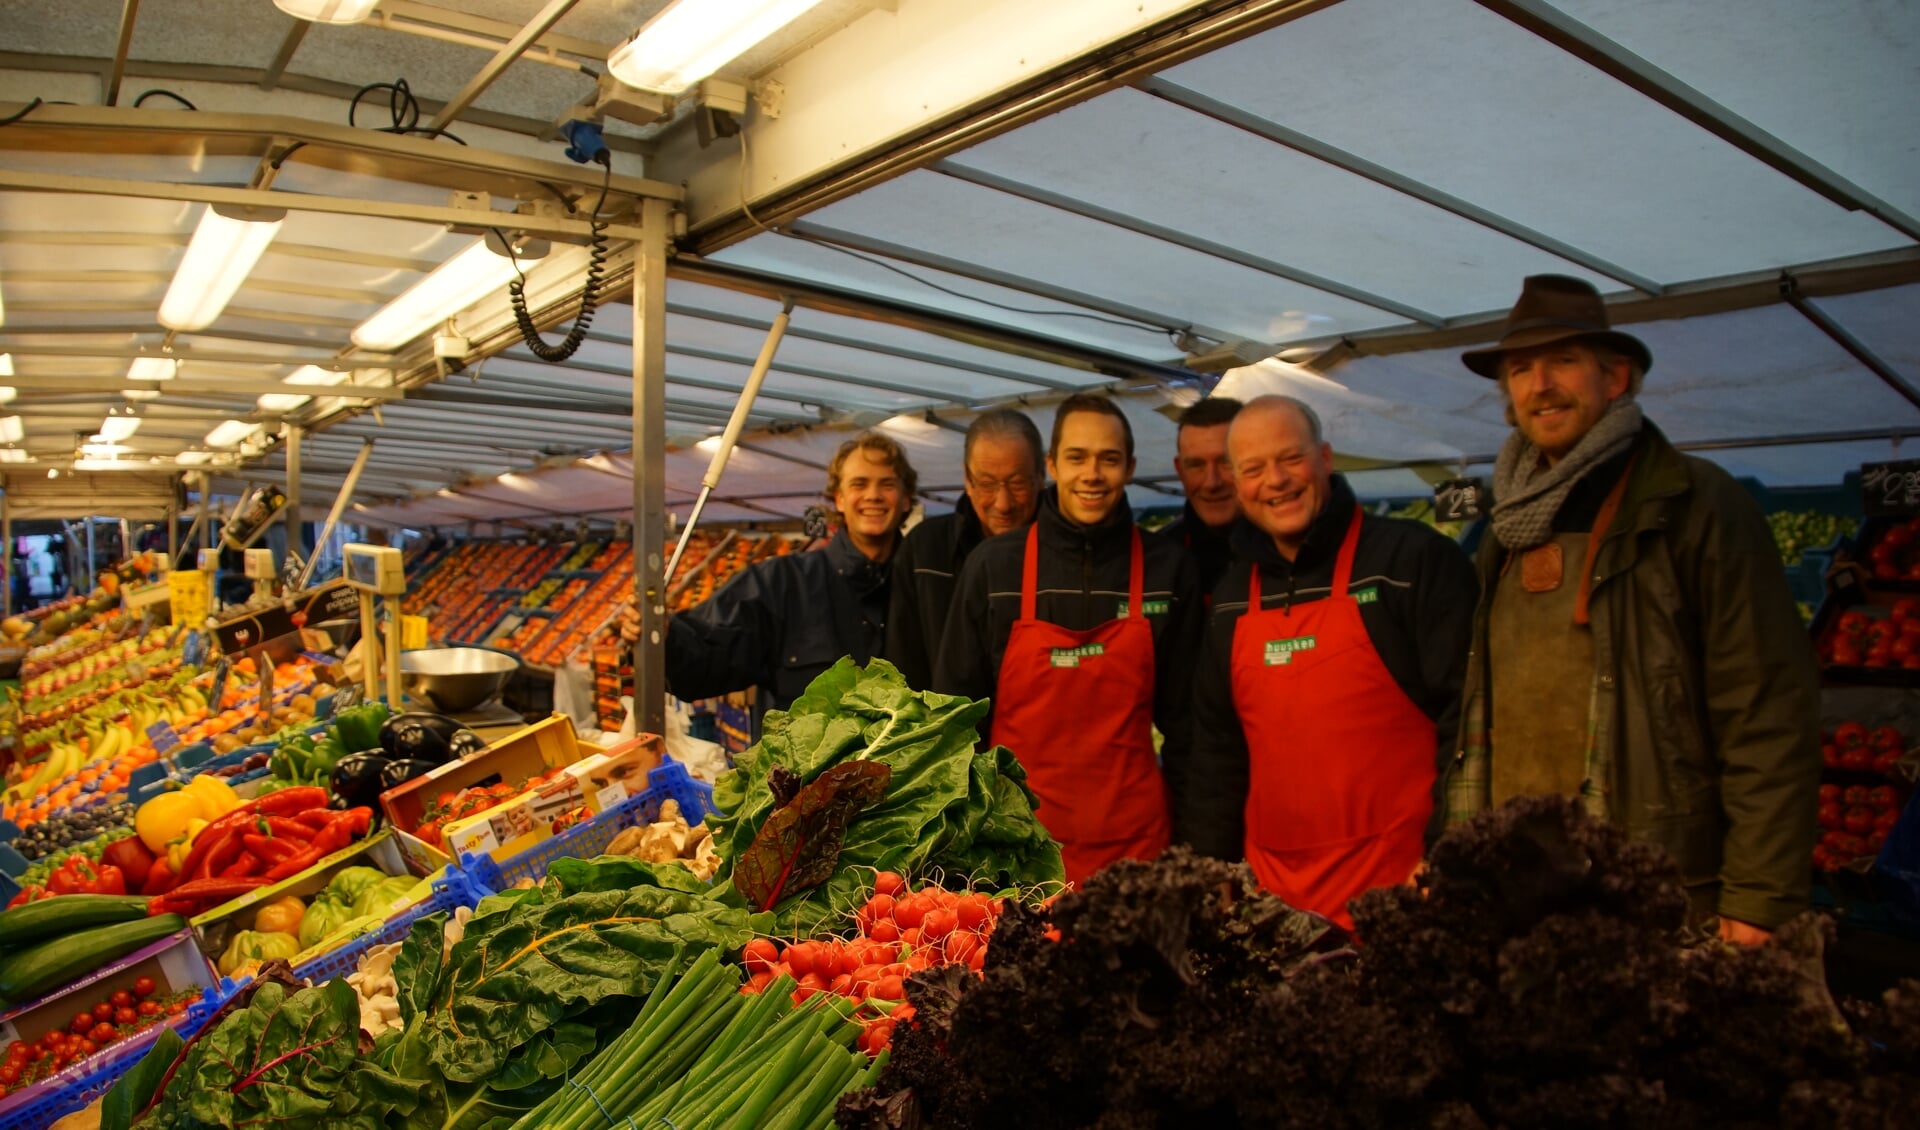 Arjan Huusken (tweede rechts) met zijn broer (r) en de medewerkers achter de marktkraam in Vorden. Foto: Bernadet te Velthuis